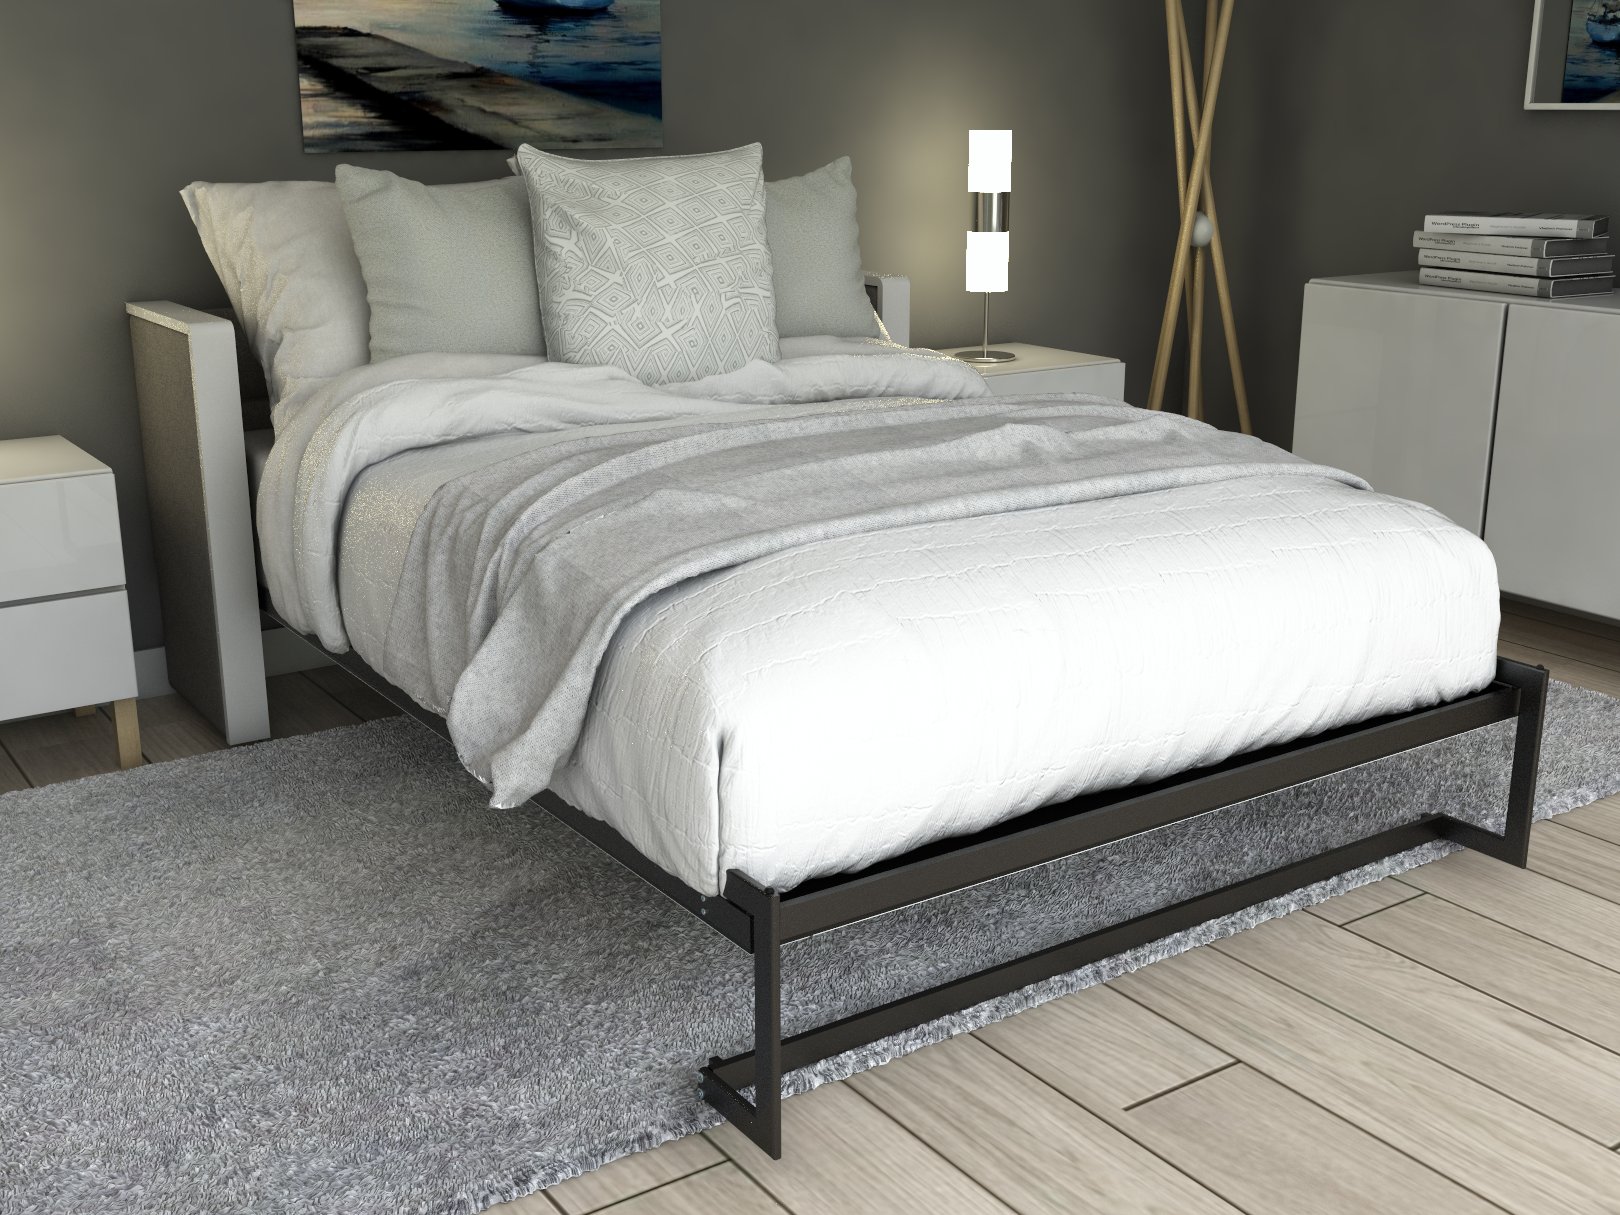 Esentelle base de cama queen size con laminado de madera color concreto // MS